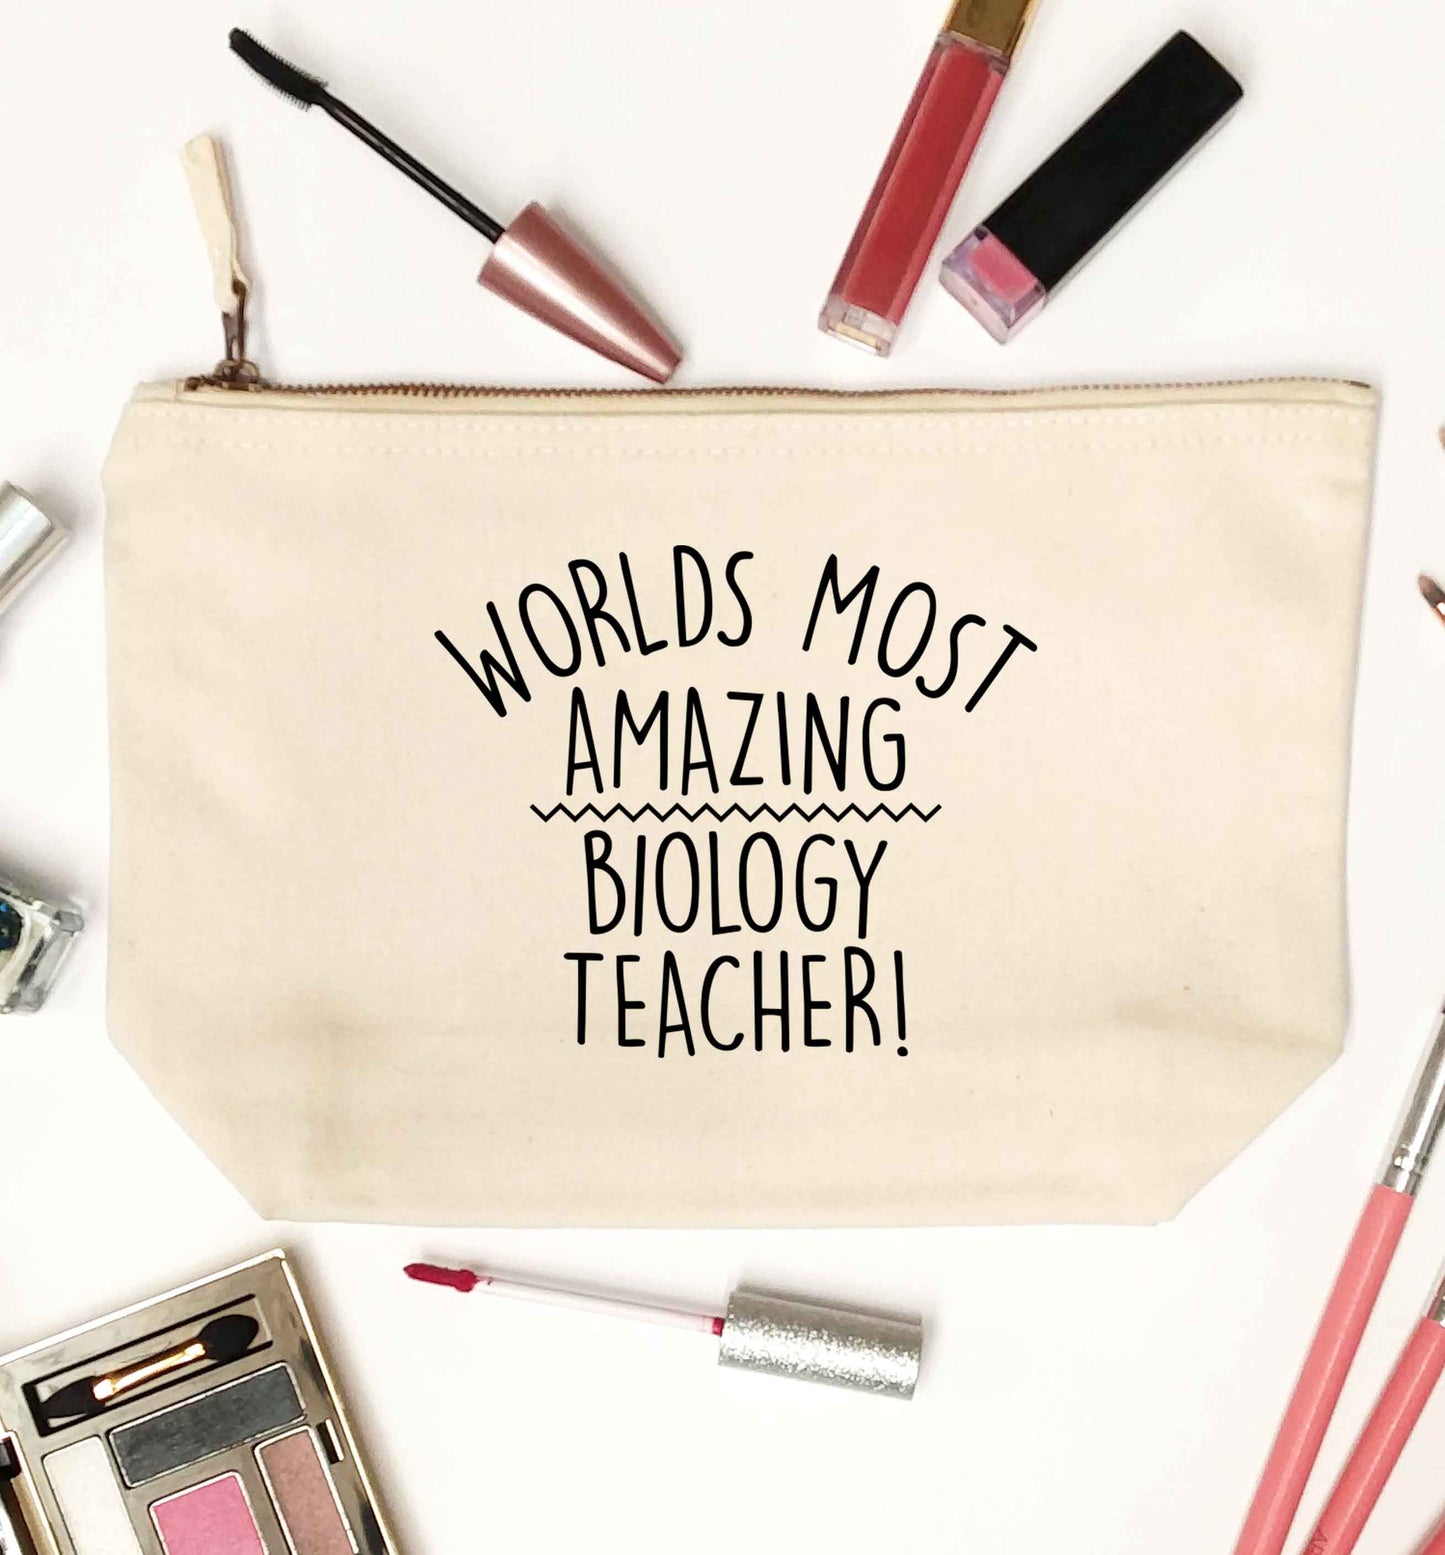 Worlds most amazing biology teacher natural makeup bag